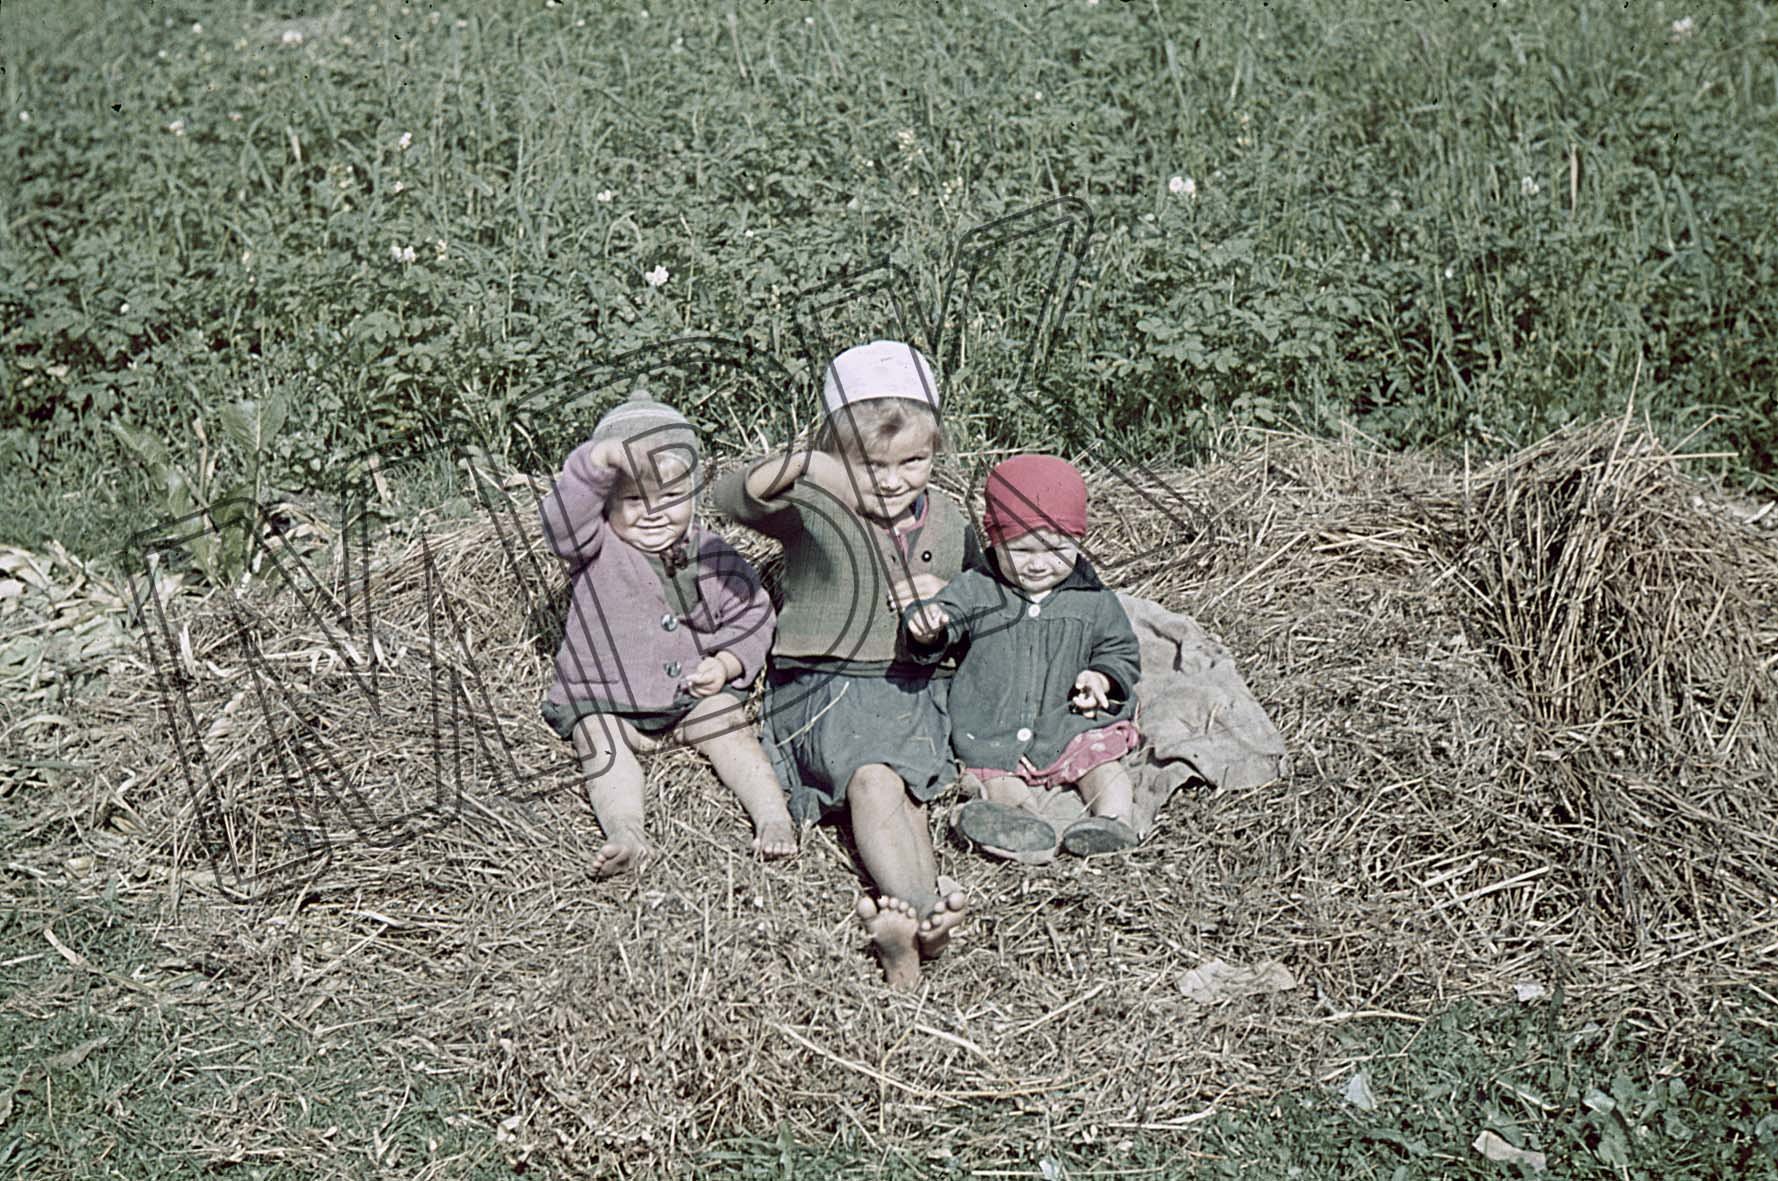 Fotografie: Porträt von drei kleinen Kindern, Orscha, August 1941 (Museum Berlin-Karlshorst RR-P)